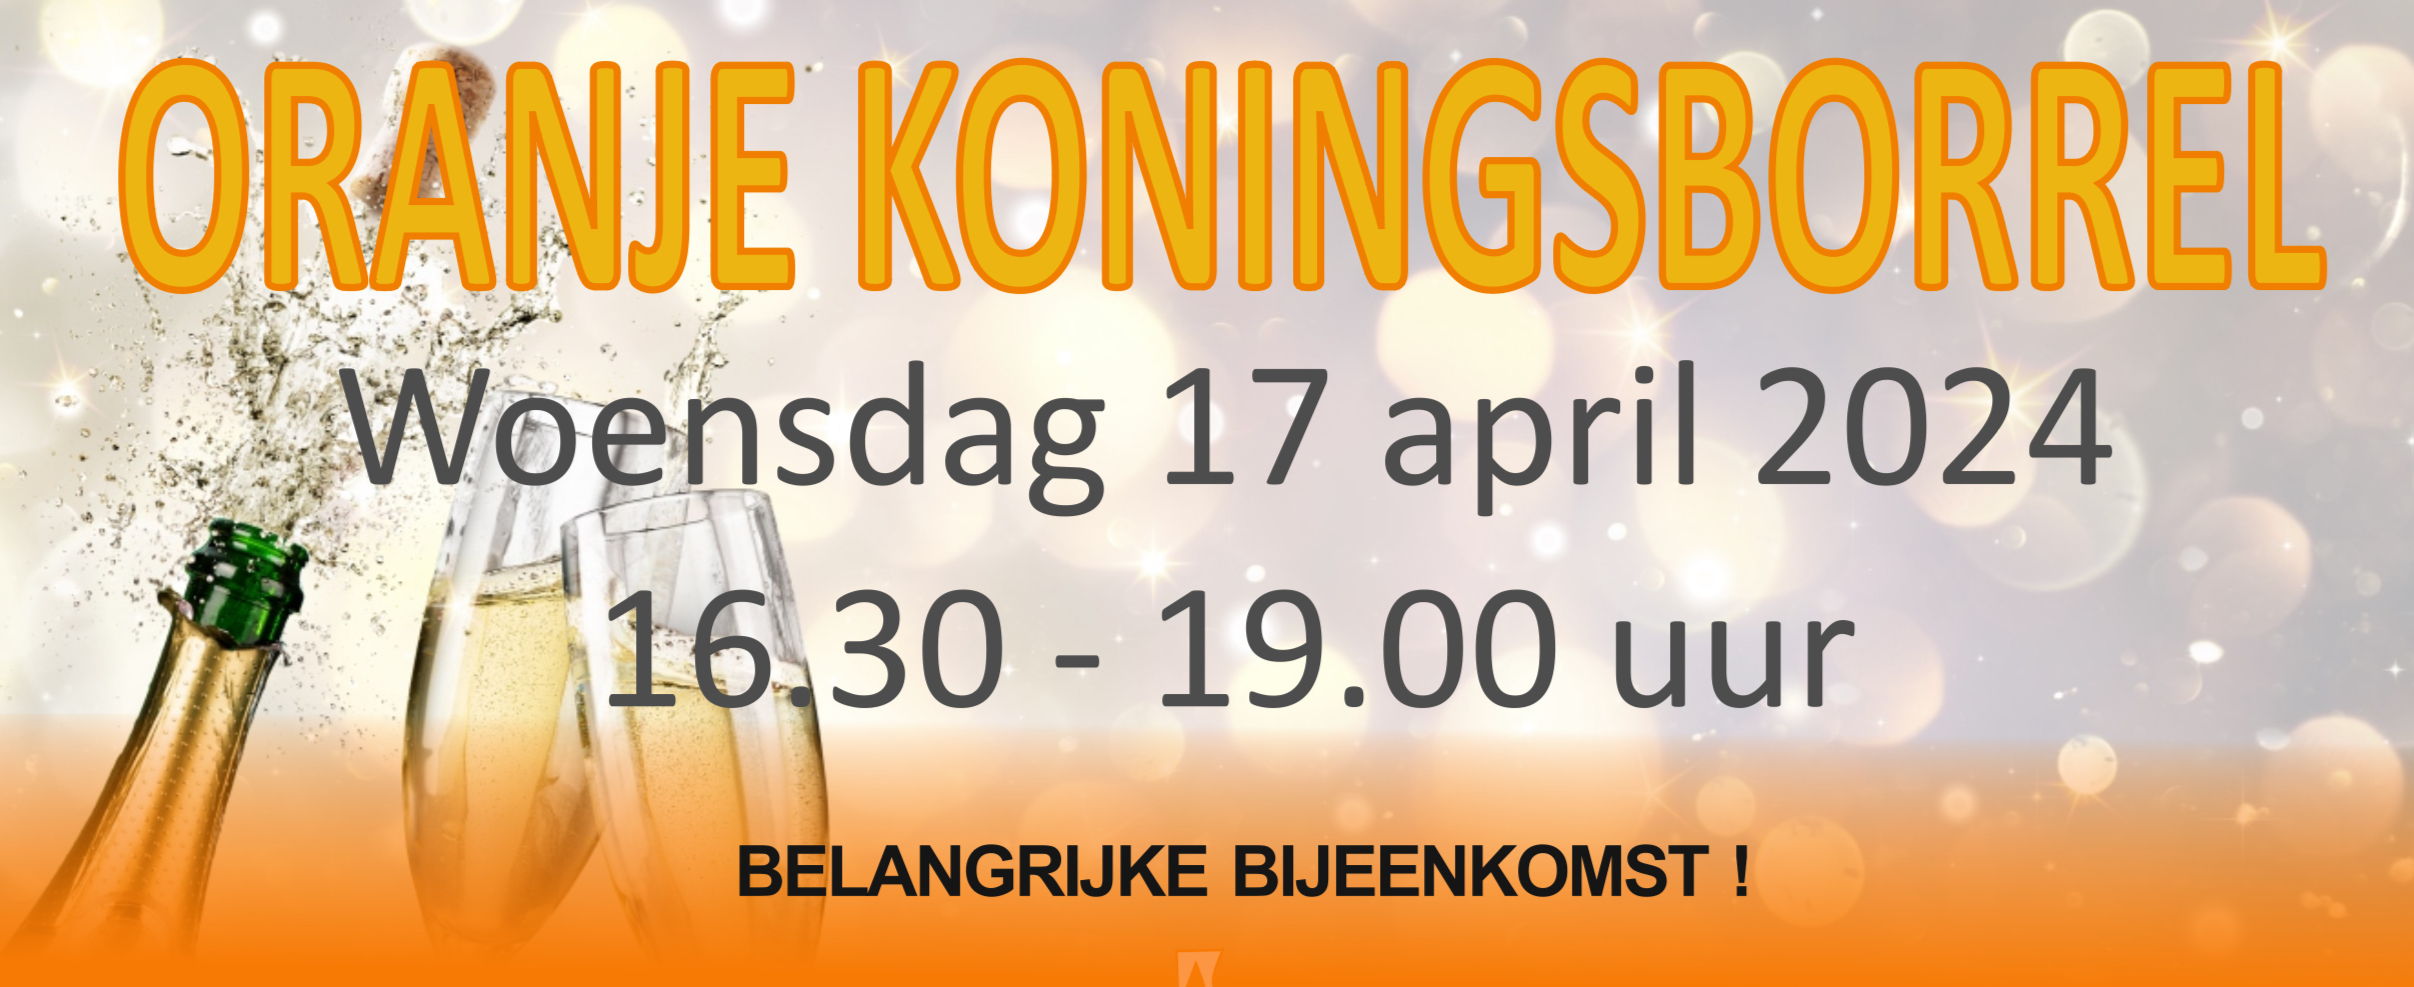 Koningsborrel/belangrijke bijeenkomst op 17 april a.s. voor leden, ondernemers en genodigden